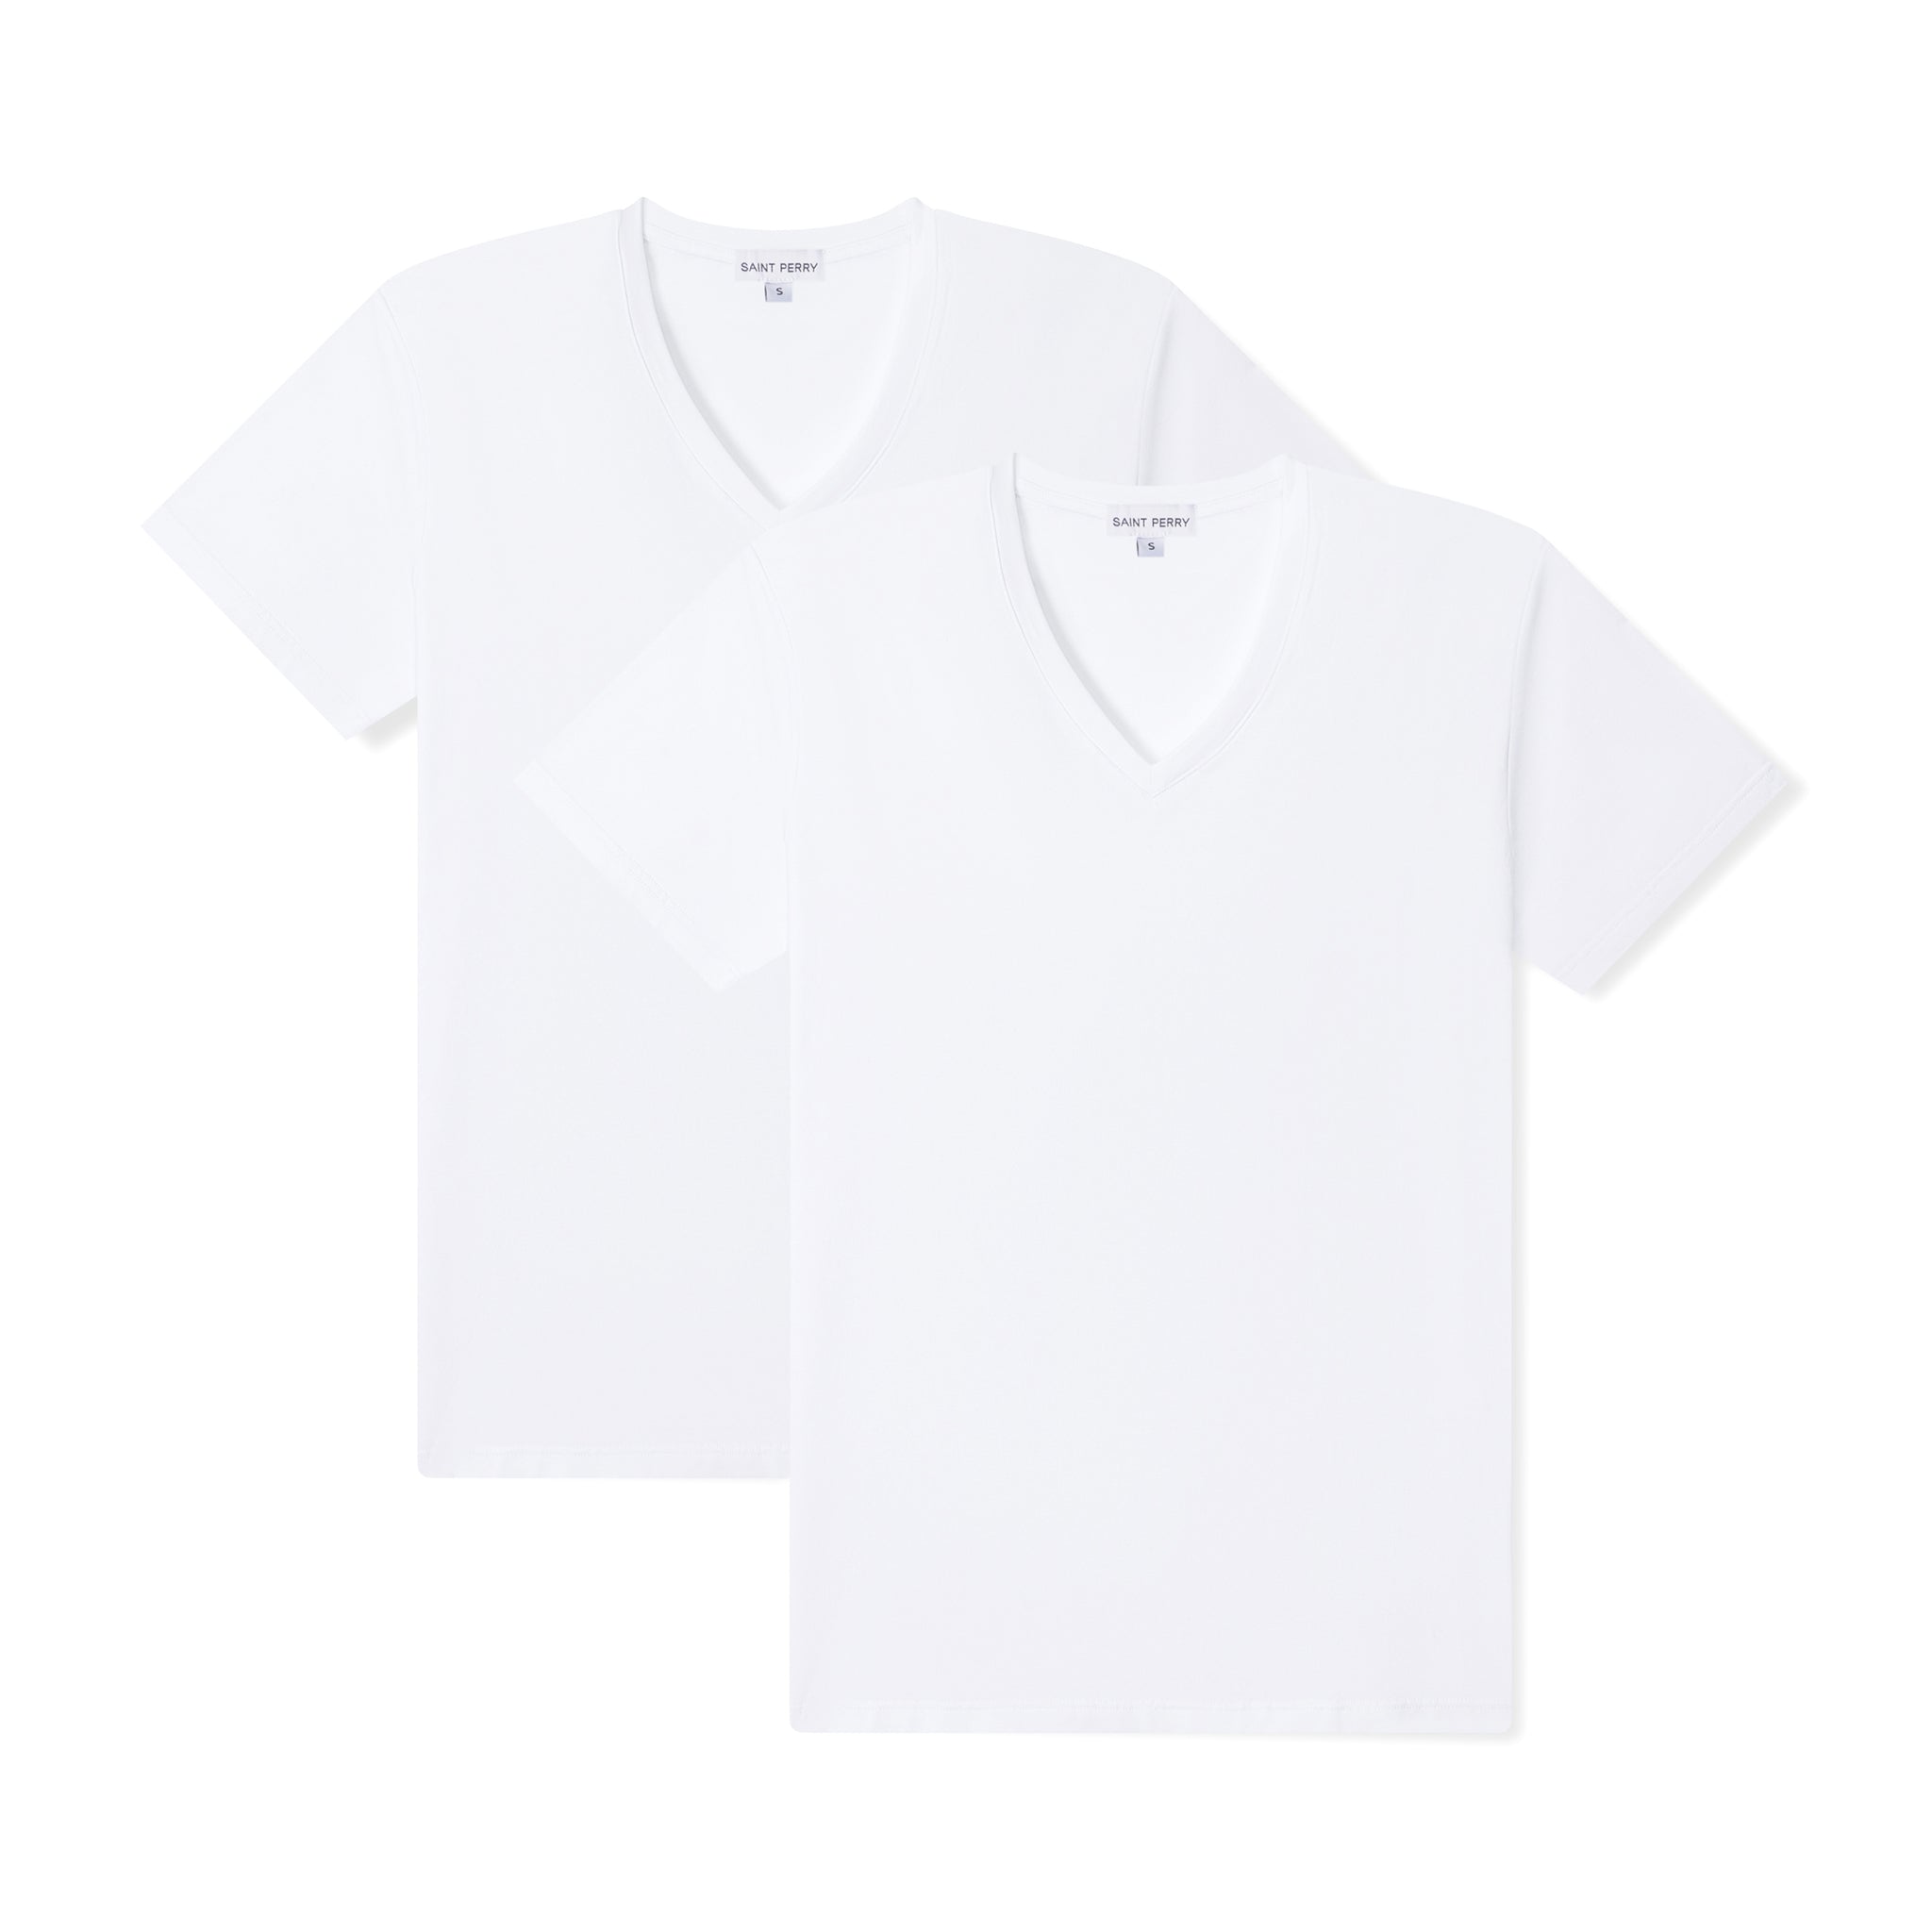 Men's V-Neck White T-Shirt 2 Pack - SAINT PERRY